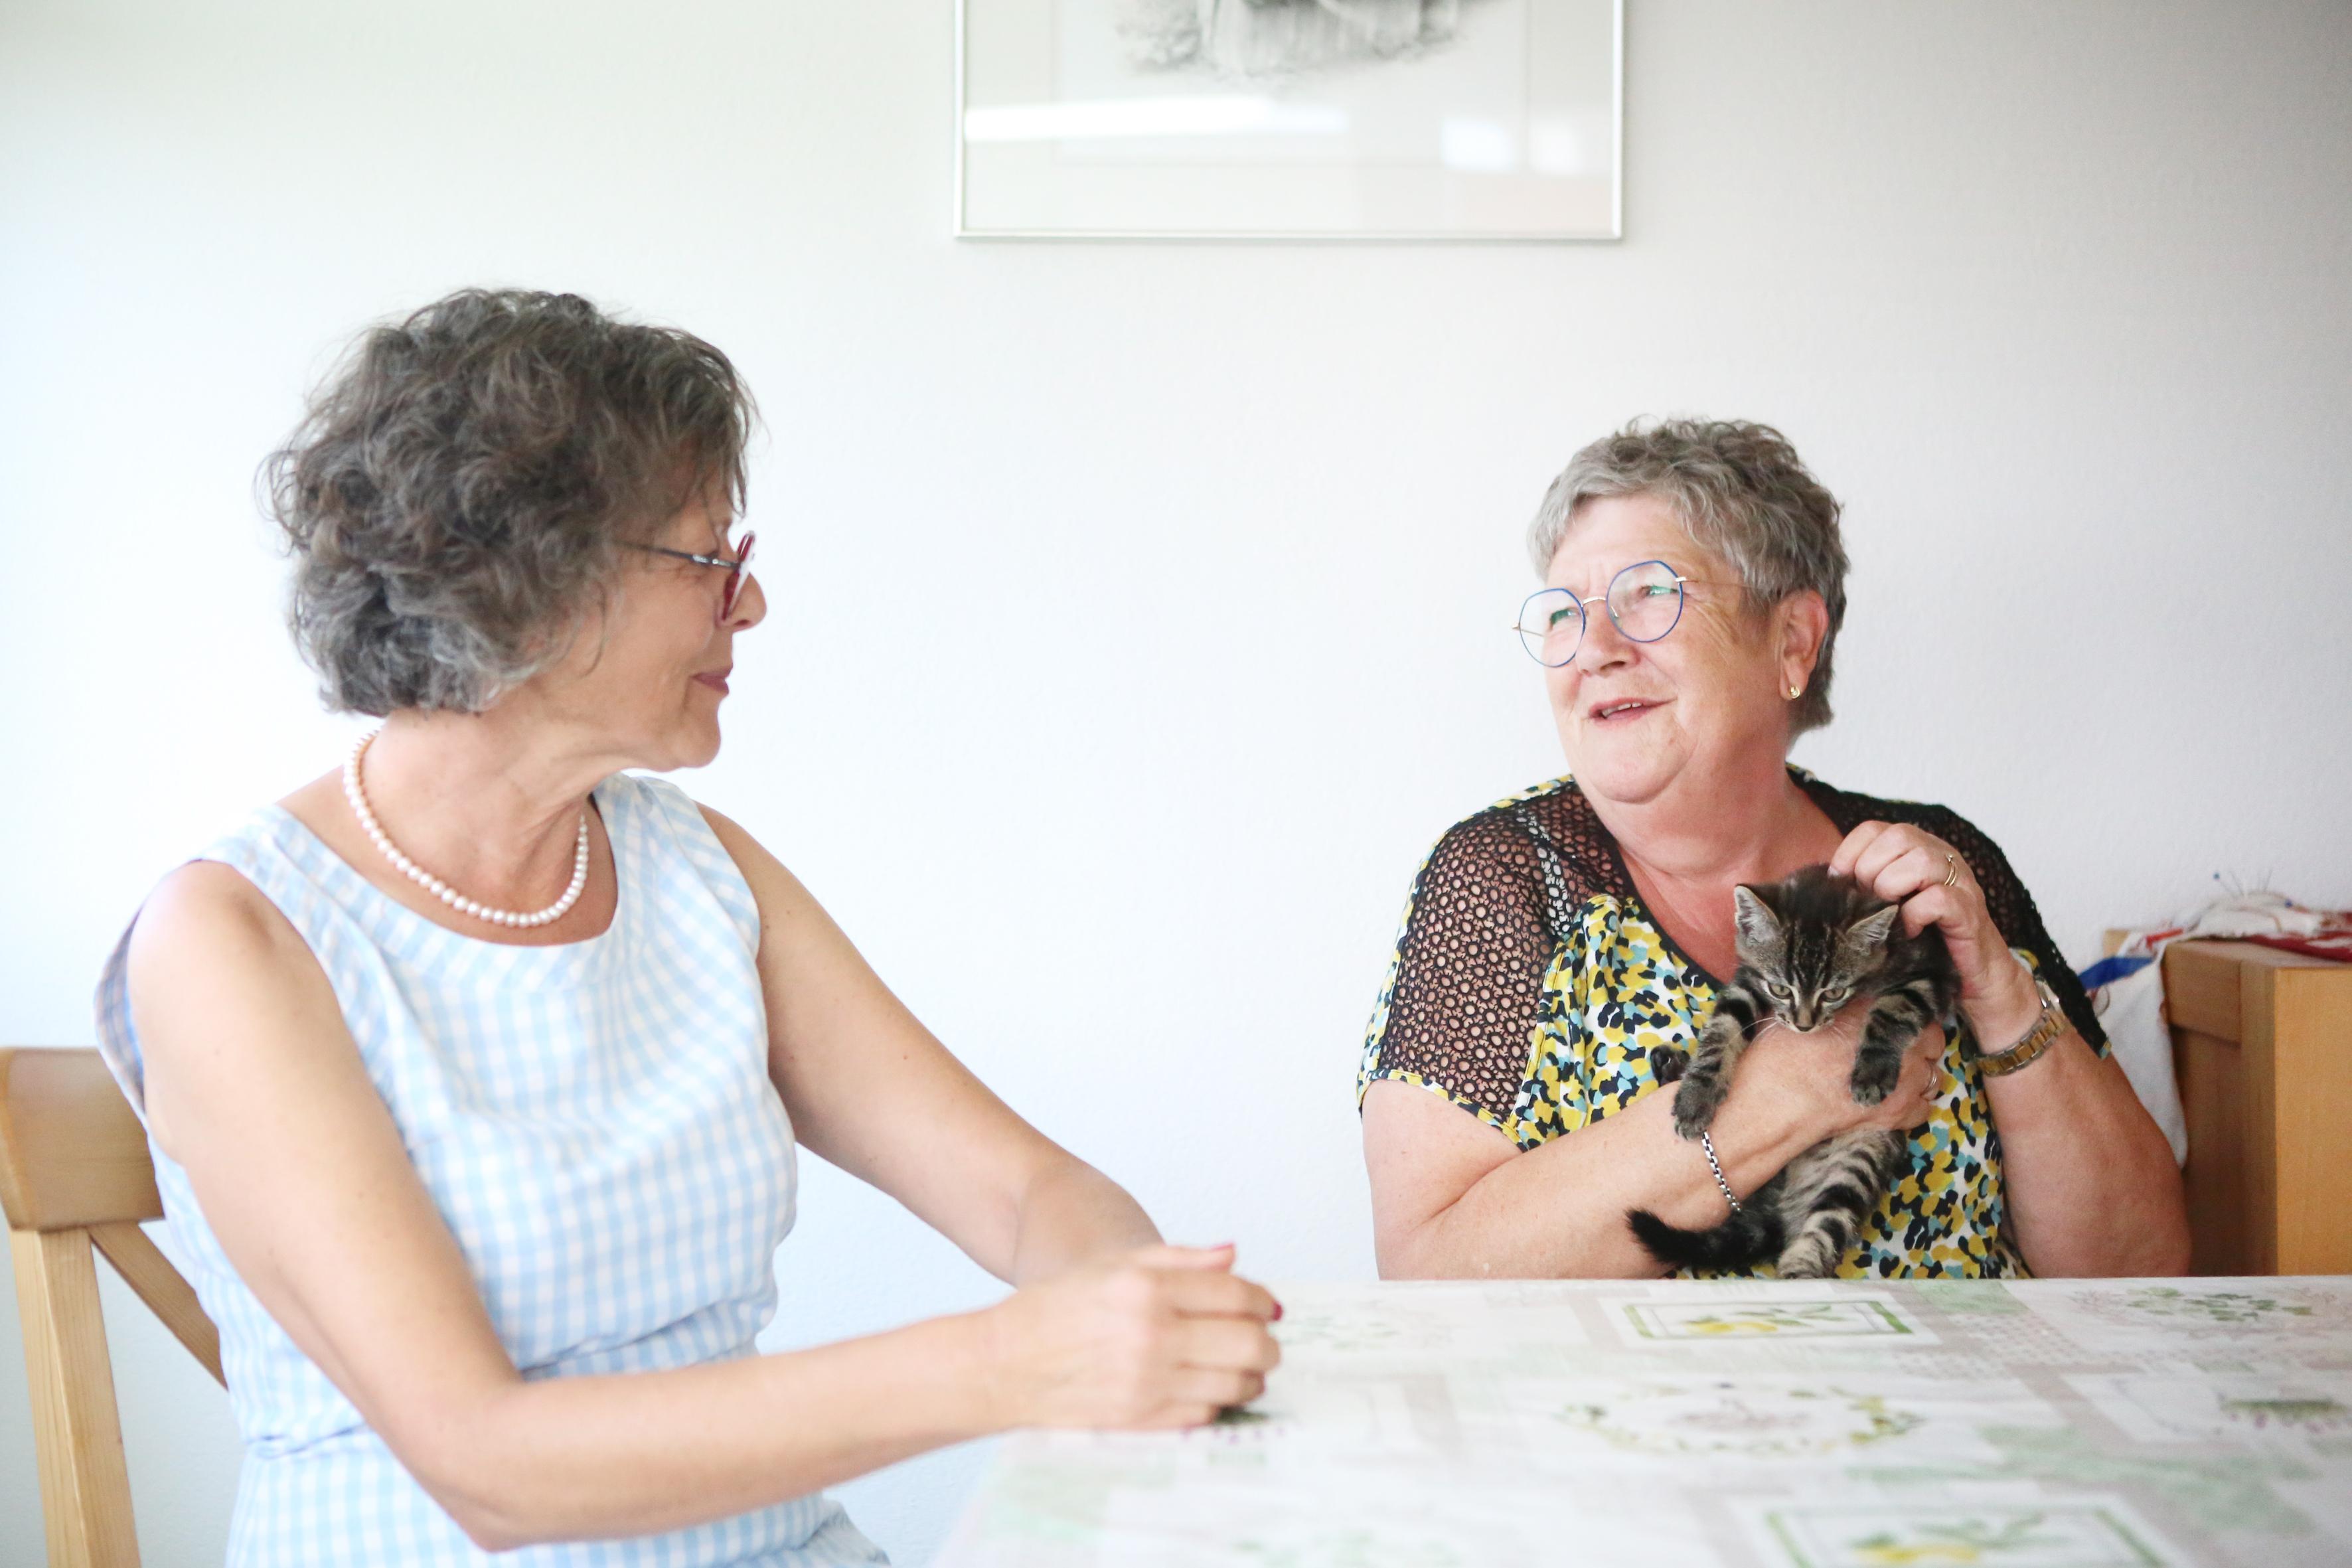 Martine Pipoz e Imelda Morard chiacchierano sedute a un tavolo. Mentre parlano, Imelda tiene tra le braccia un gattino e lo accarezza.